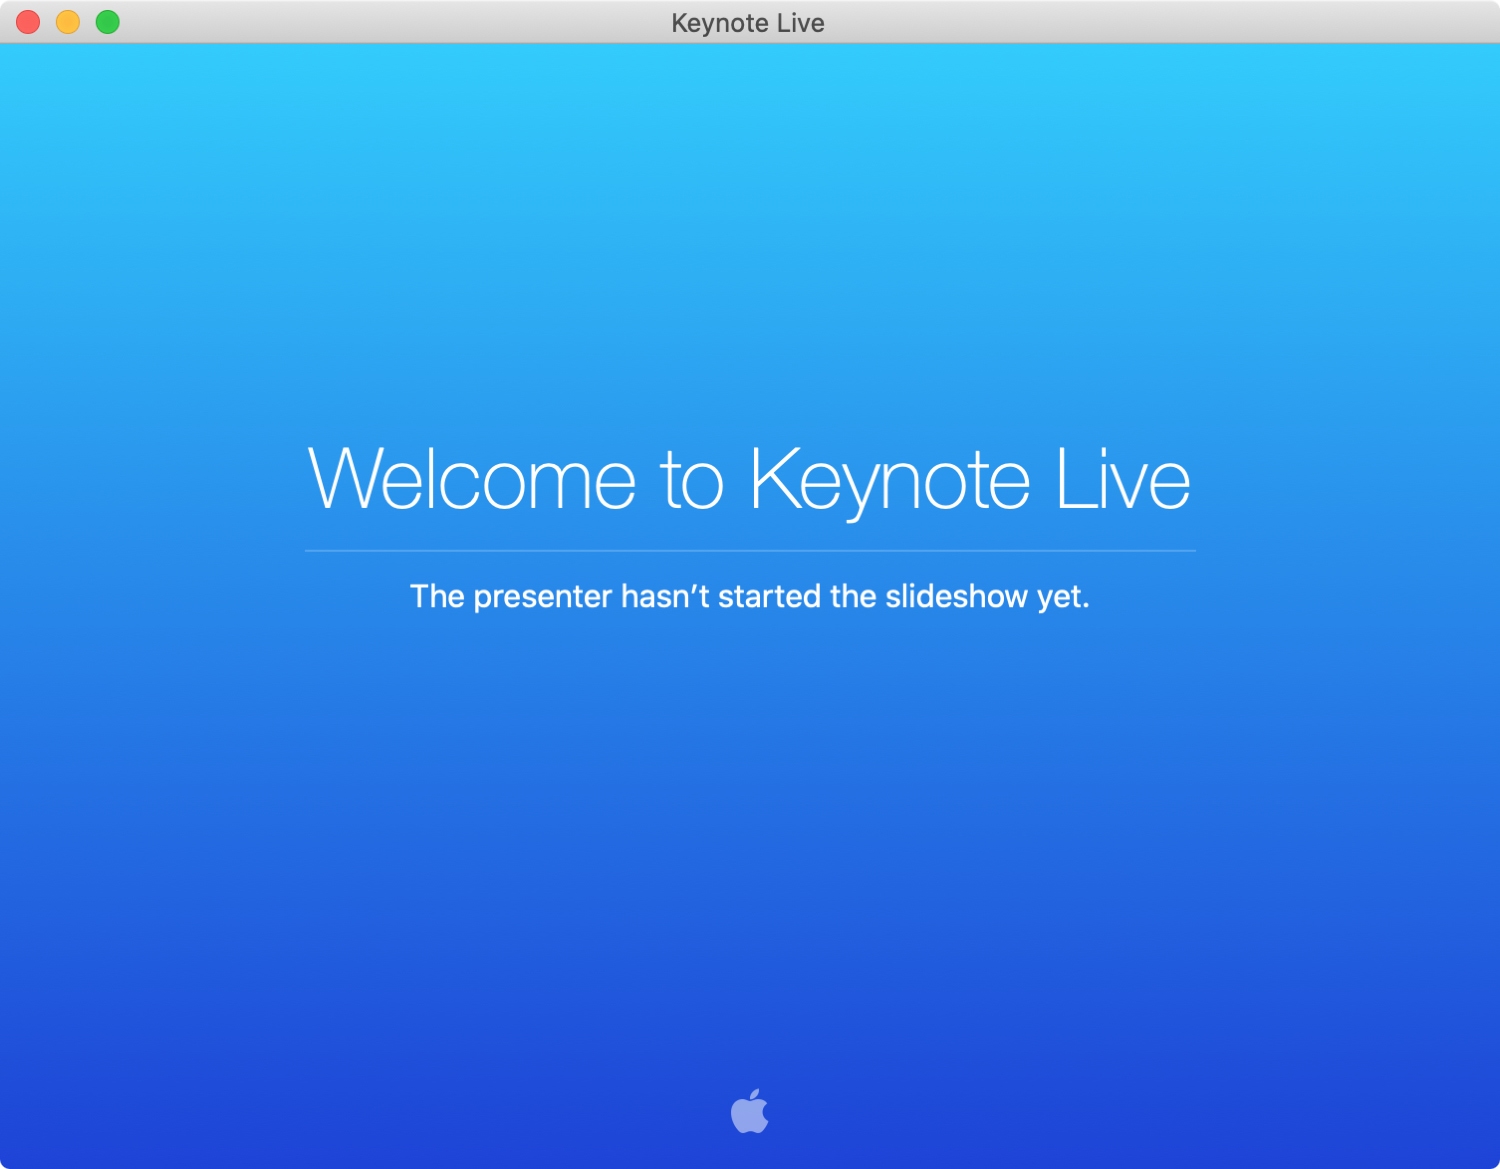 Chào mừng bạn đến với Keynote Live Mac